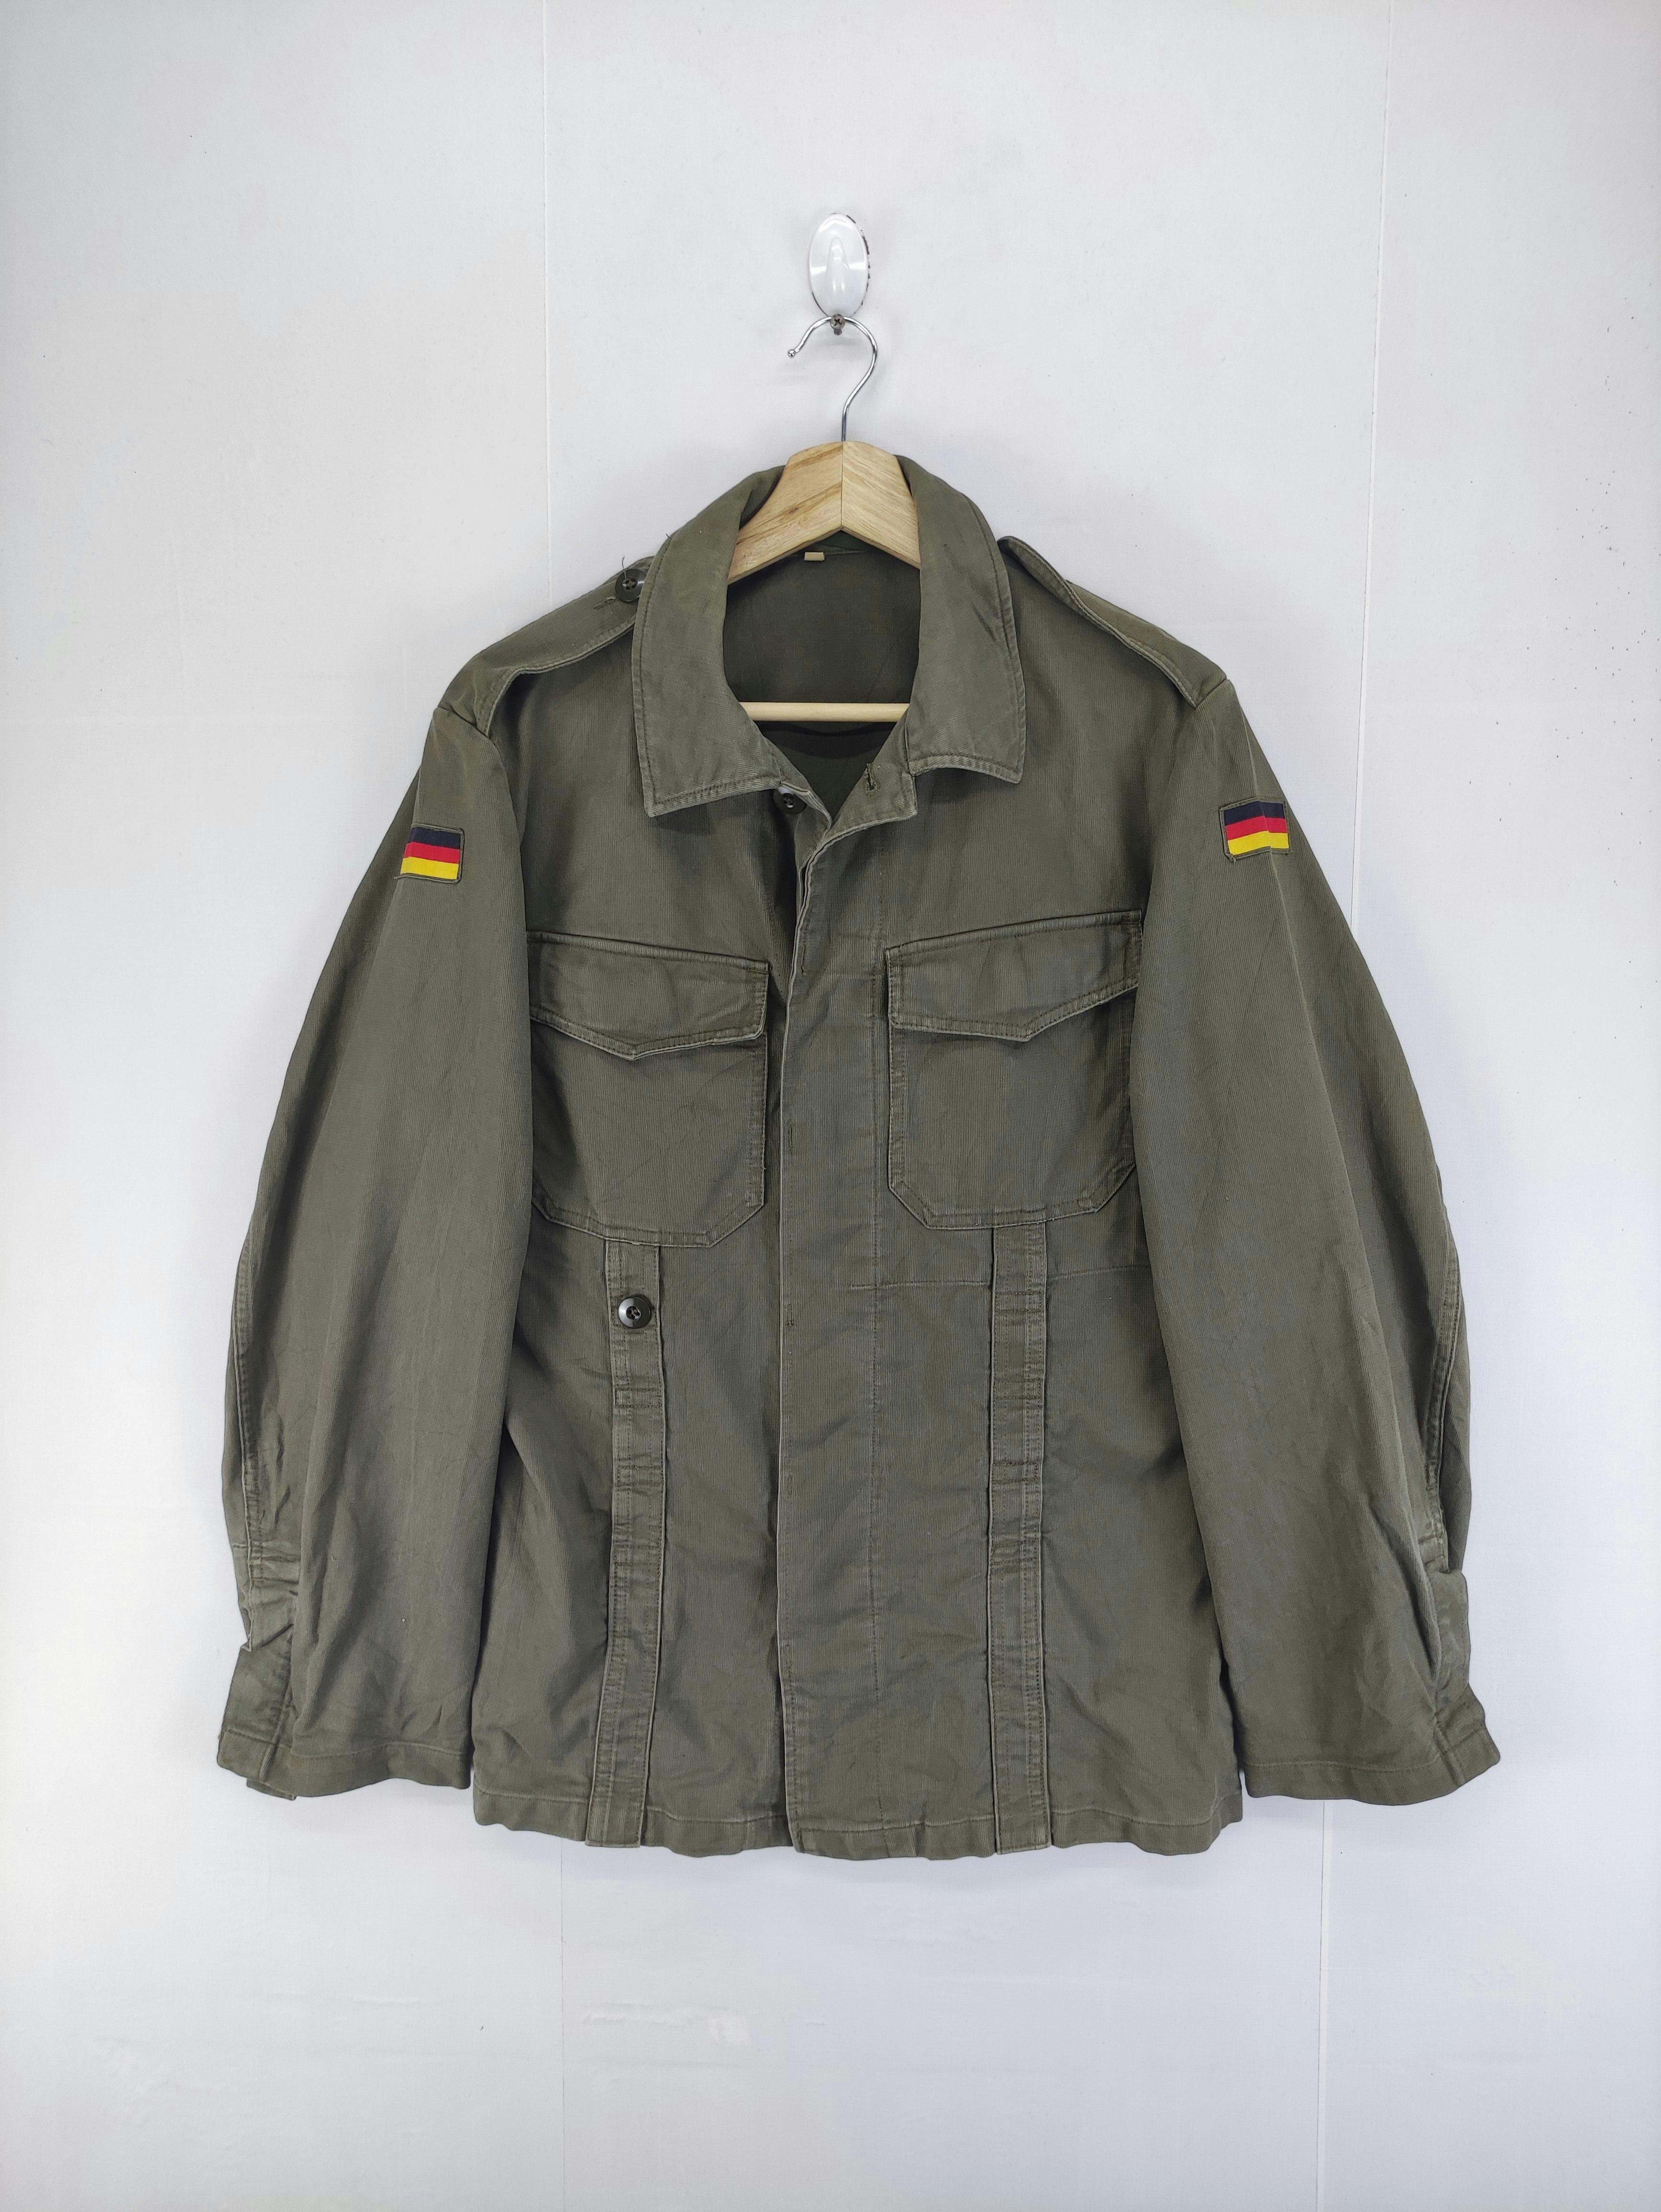 Vintage Germany Army OG Jacket - 1